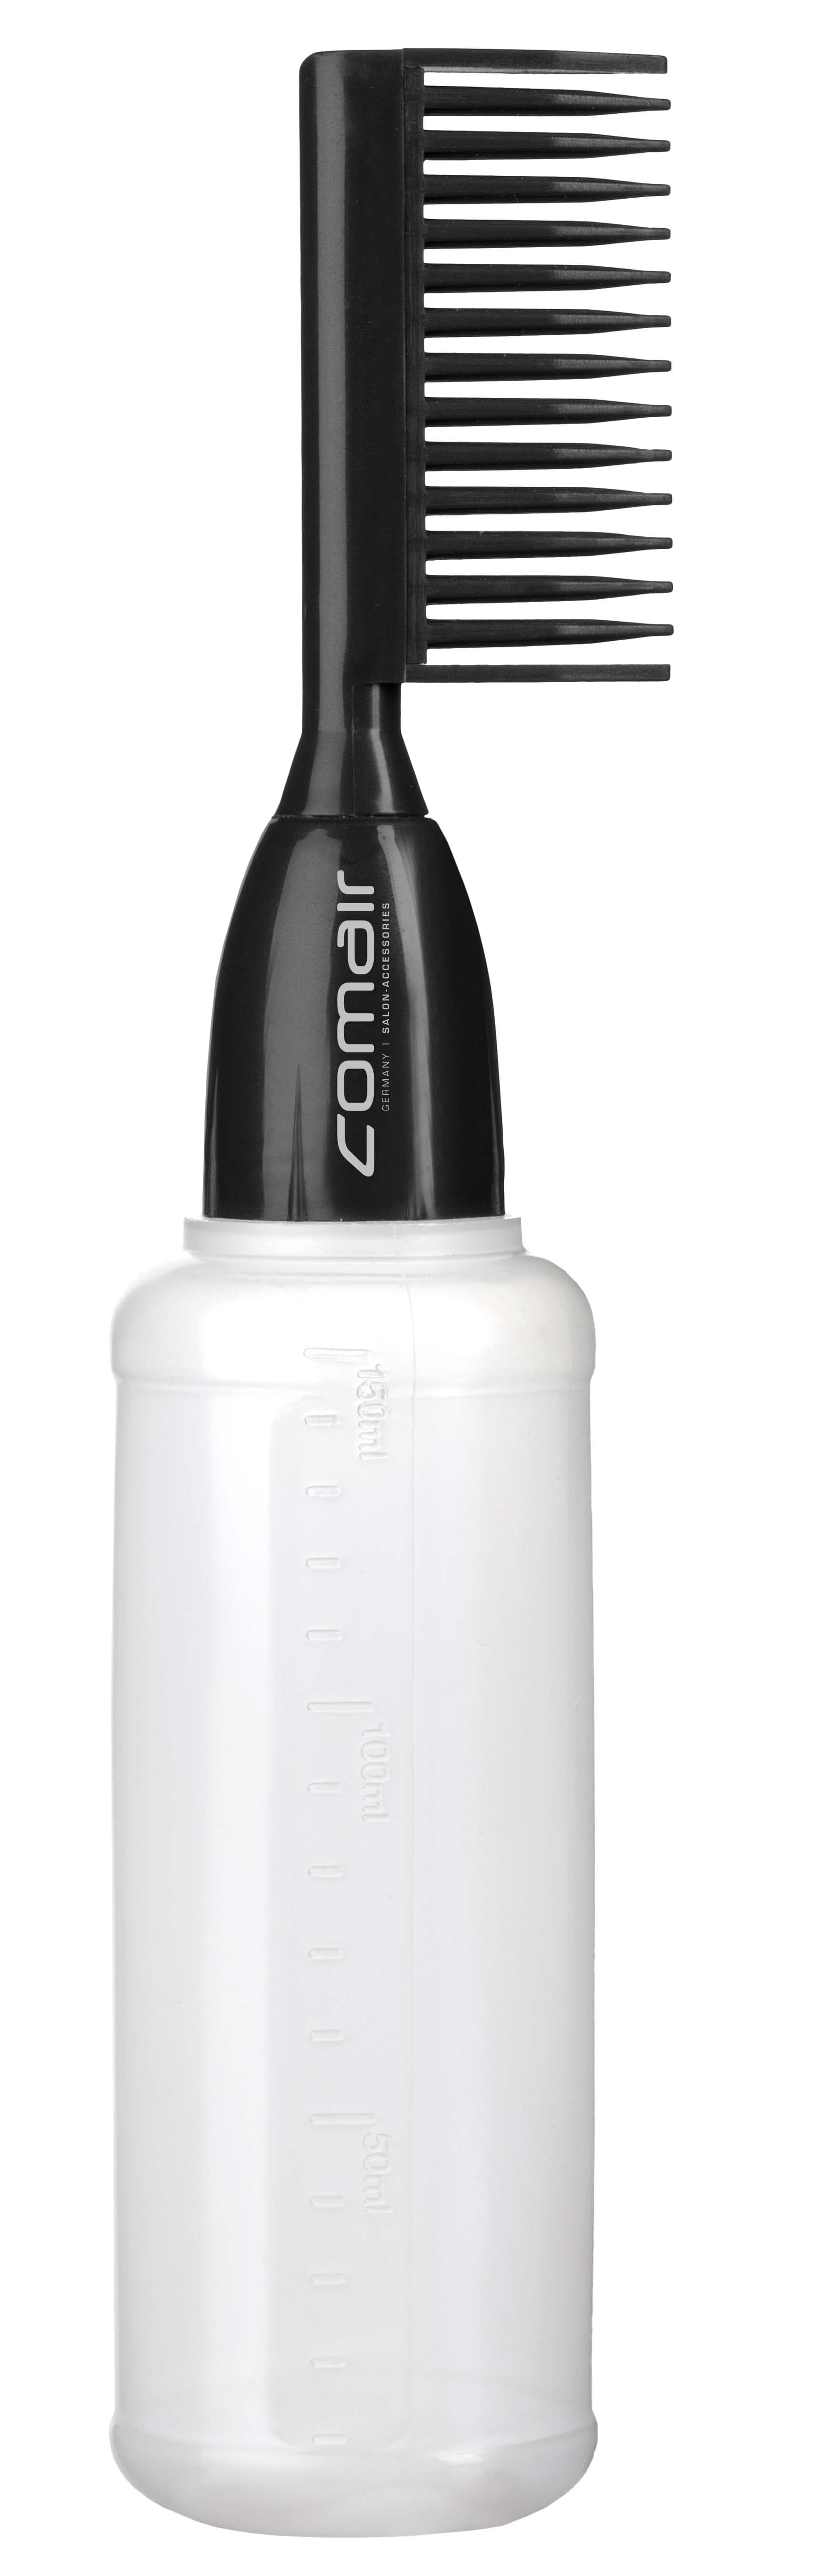 Comair application bottle 7001302 - aplikačná fľaša s hrebeňom na farbenie vlasov